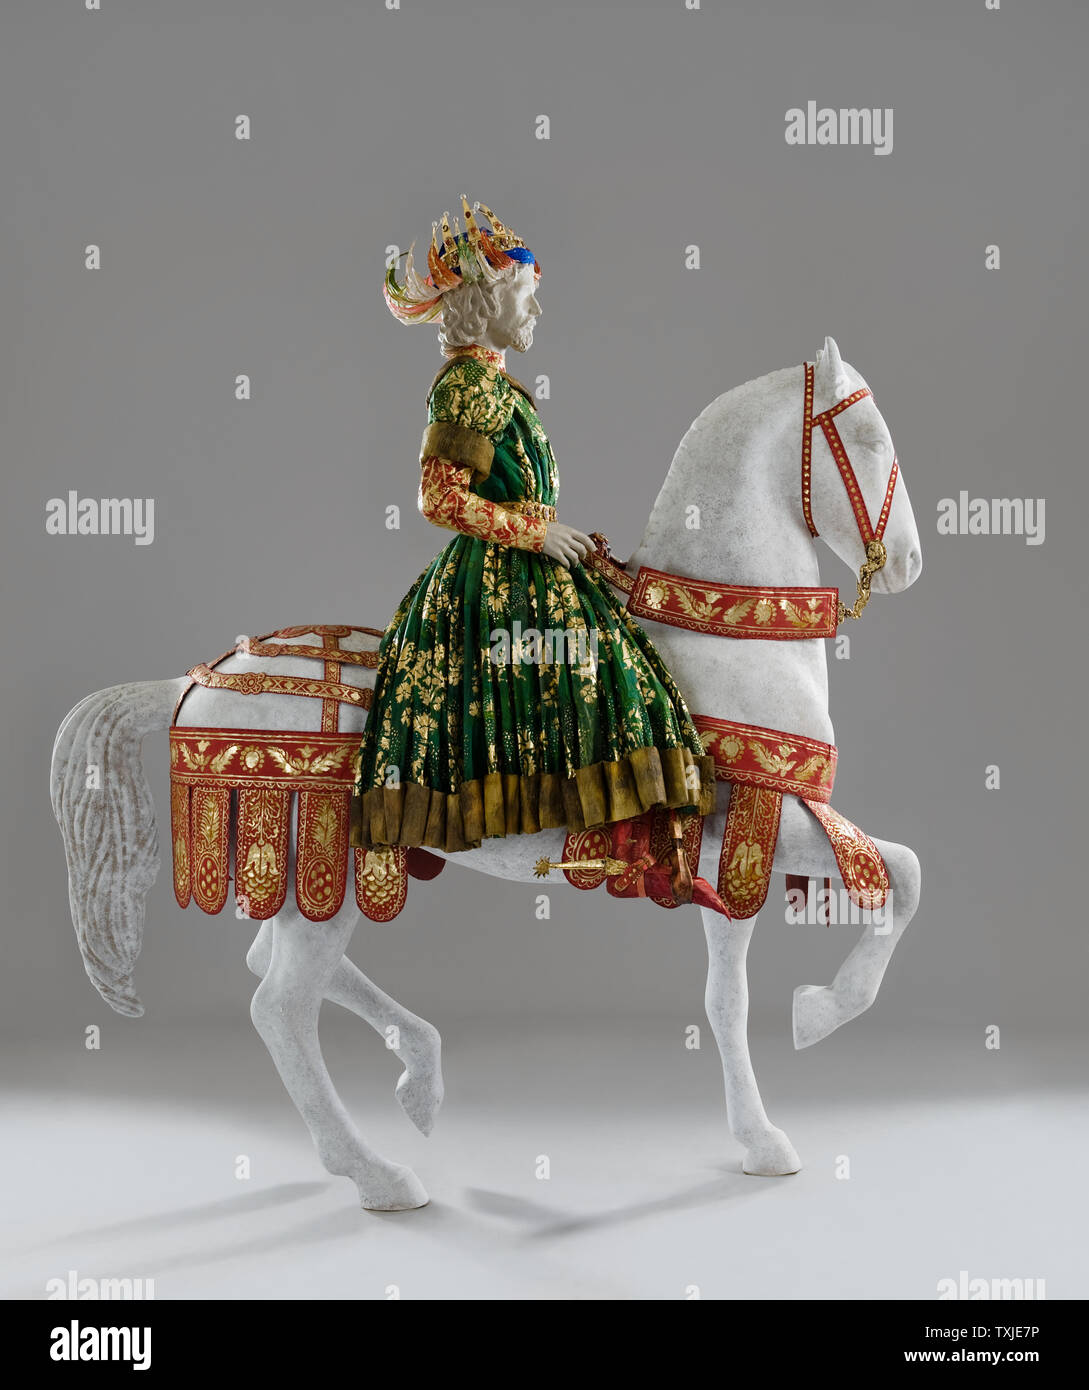 König Mannequin auf dem Pferd tragen Papier Kostüm von Isabelle de Borchgrave Stockfoto